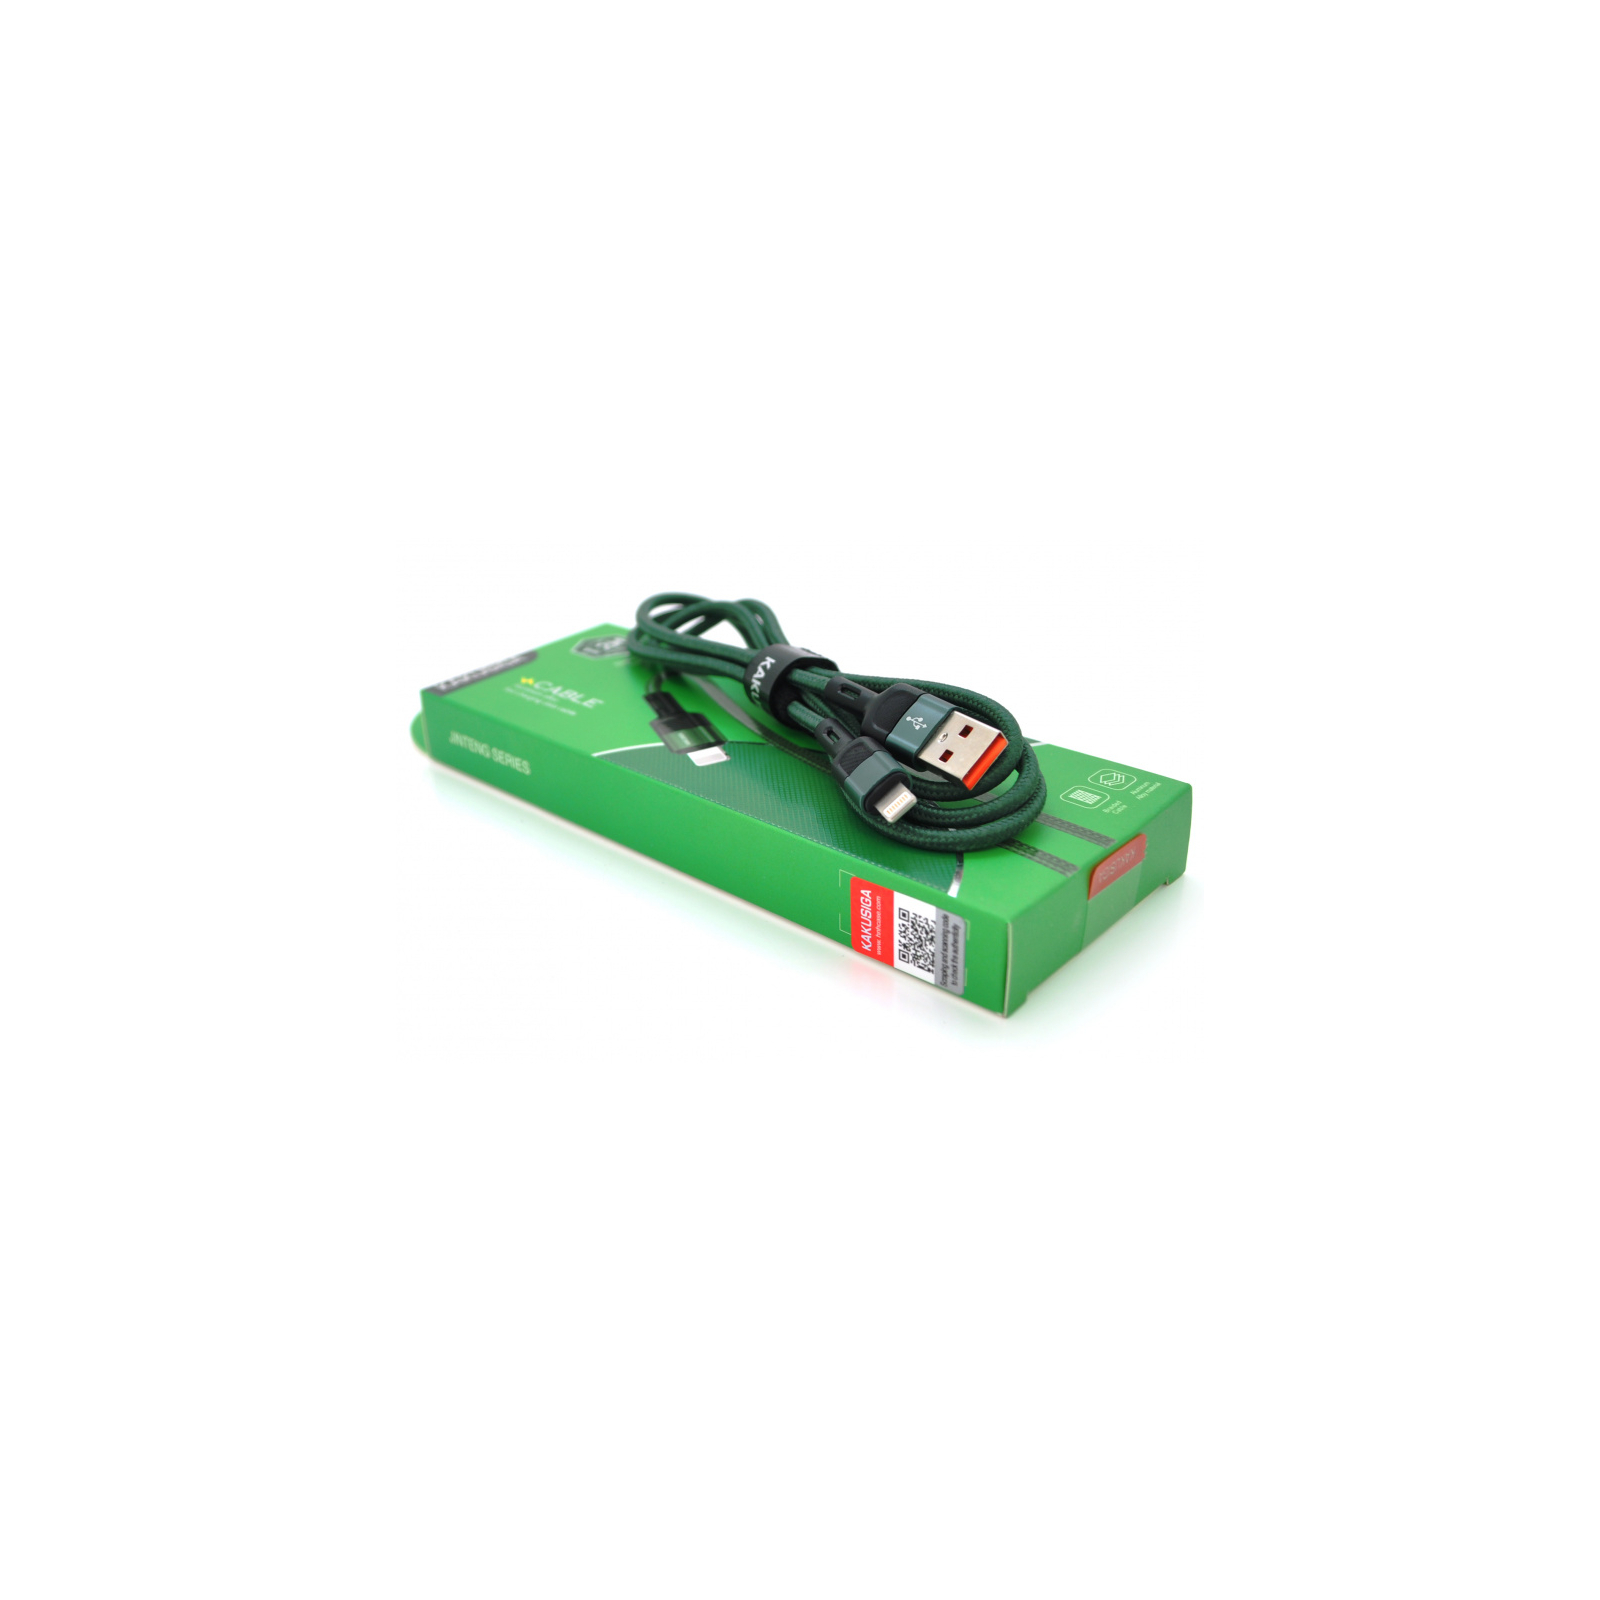 Дата кабель USB 2.0 AM to Lightning 1.2m KSC-458 JINTENG Green iKAKU (KSC-458-G-L)